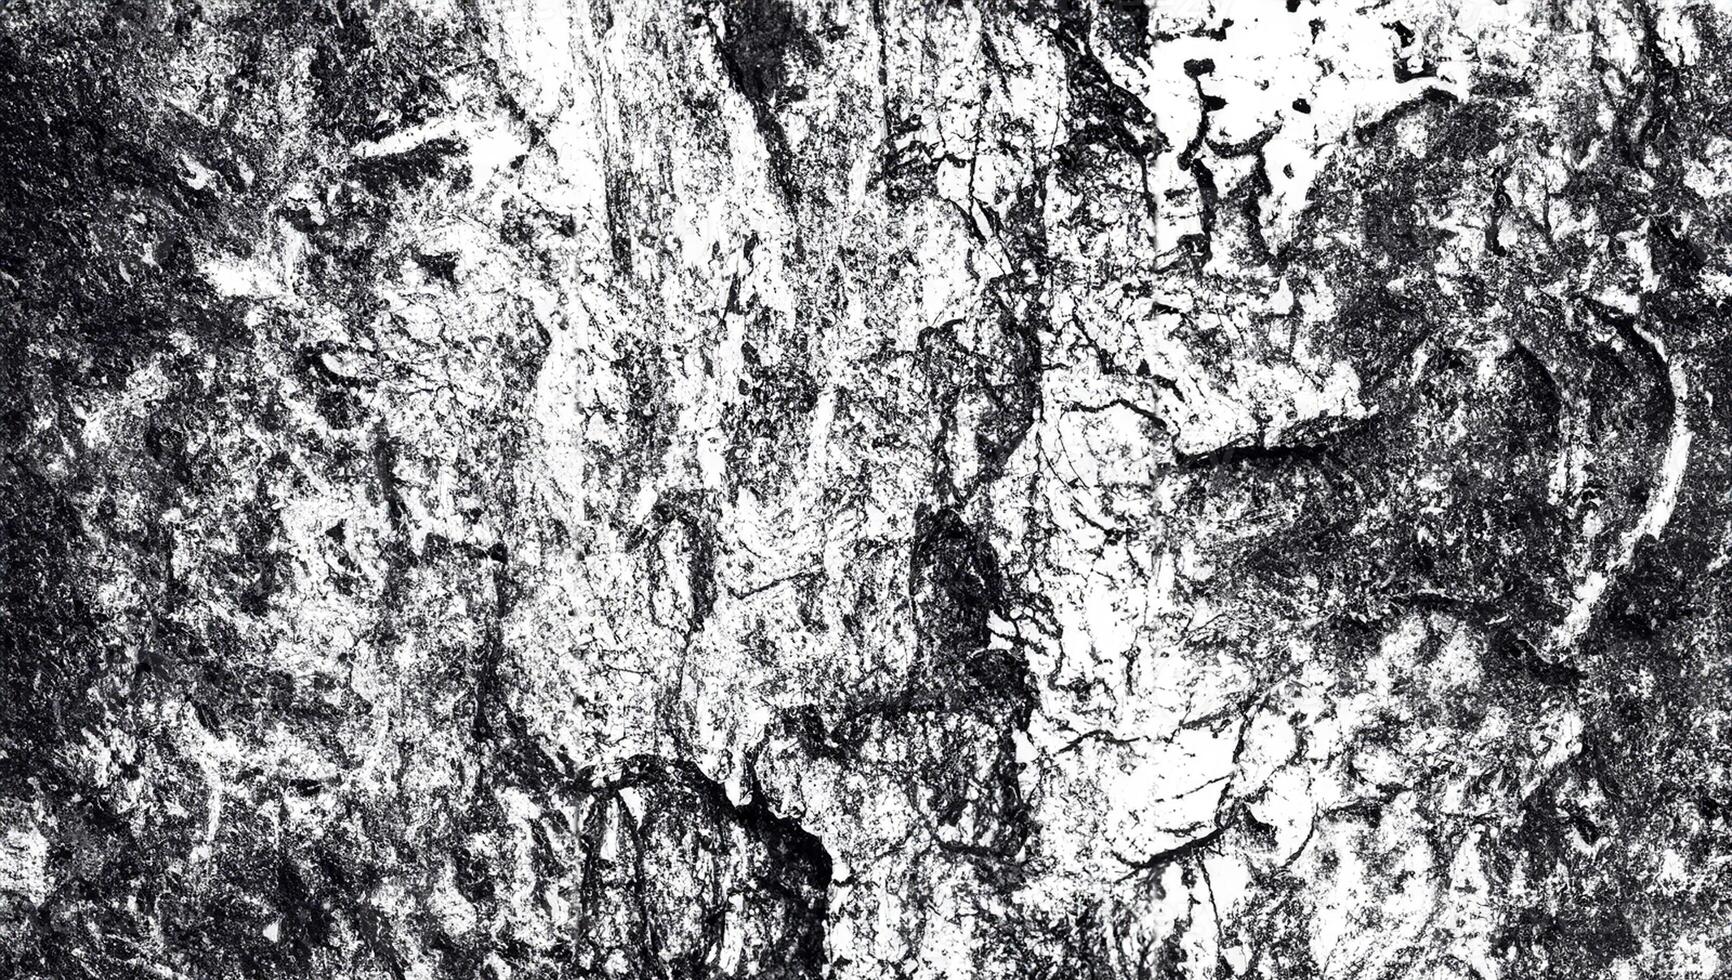 Natural Beauty, Textured Bark Close Up photo